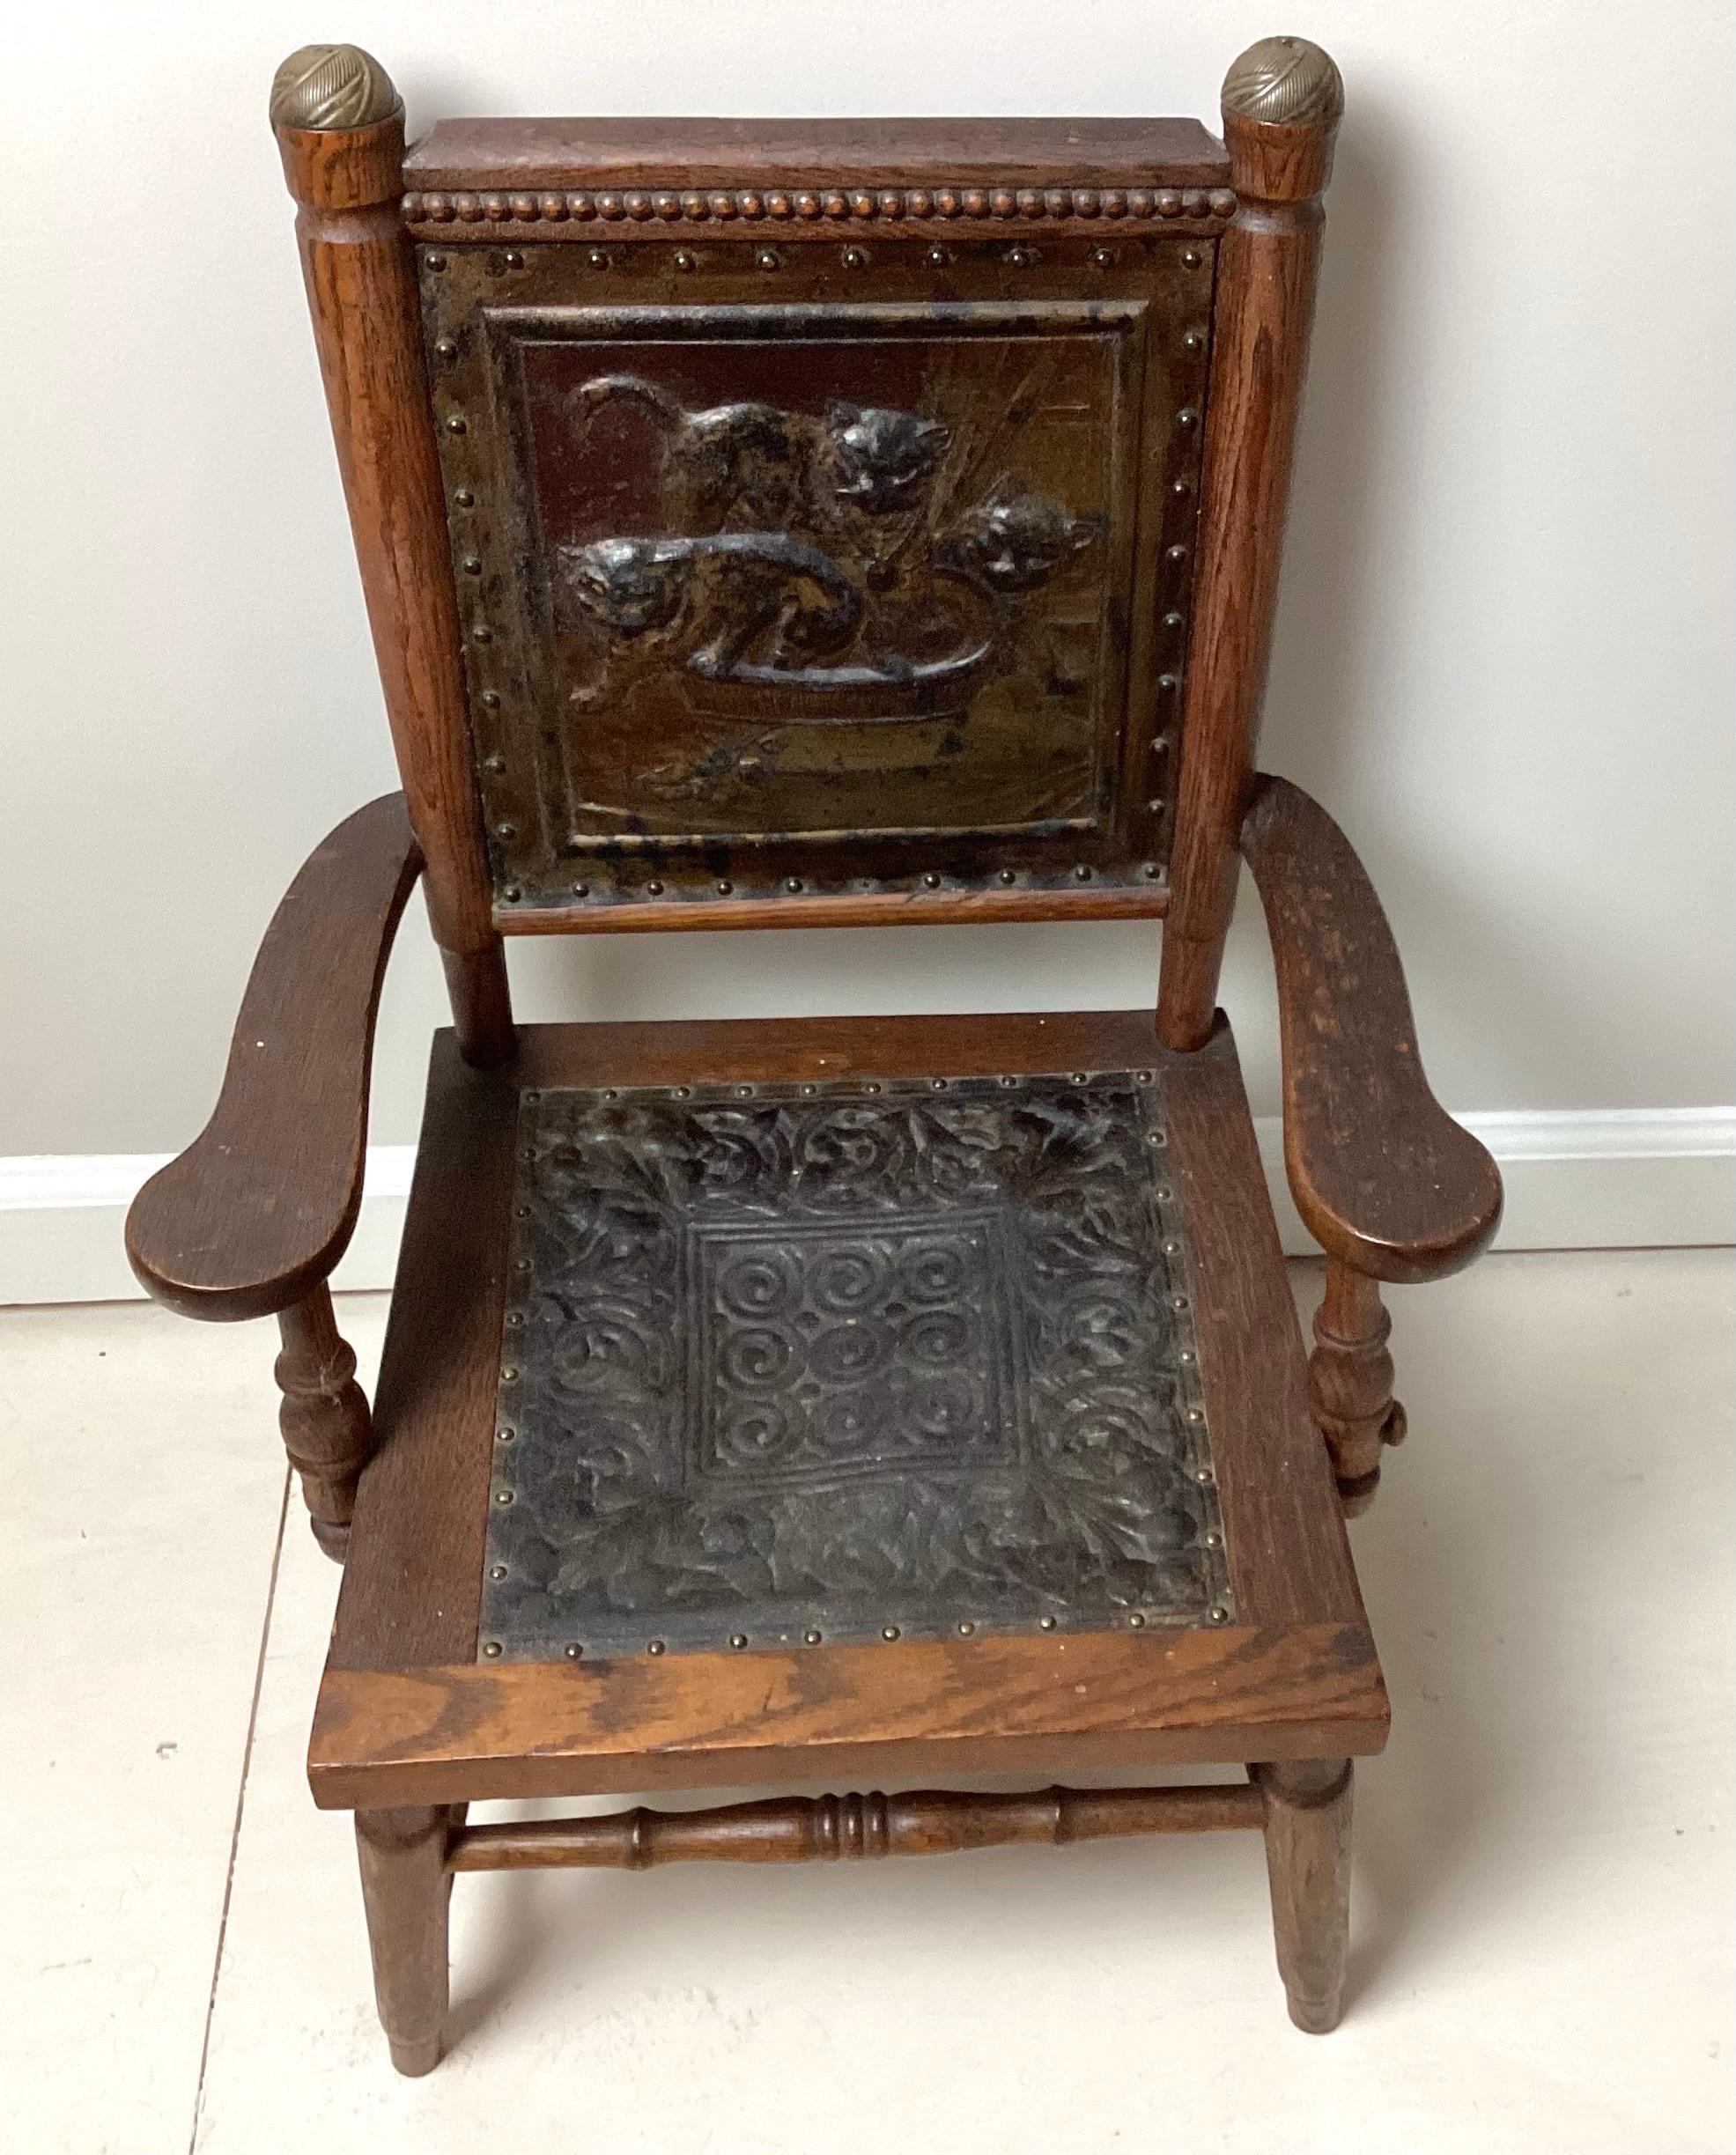 Victorian Aesthetic Movement Childs Chair mit gepressten Lederkatzen auf der Sitzlehne. 17